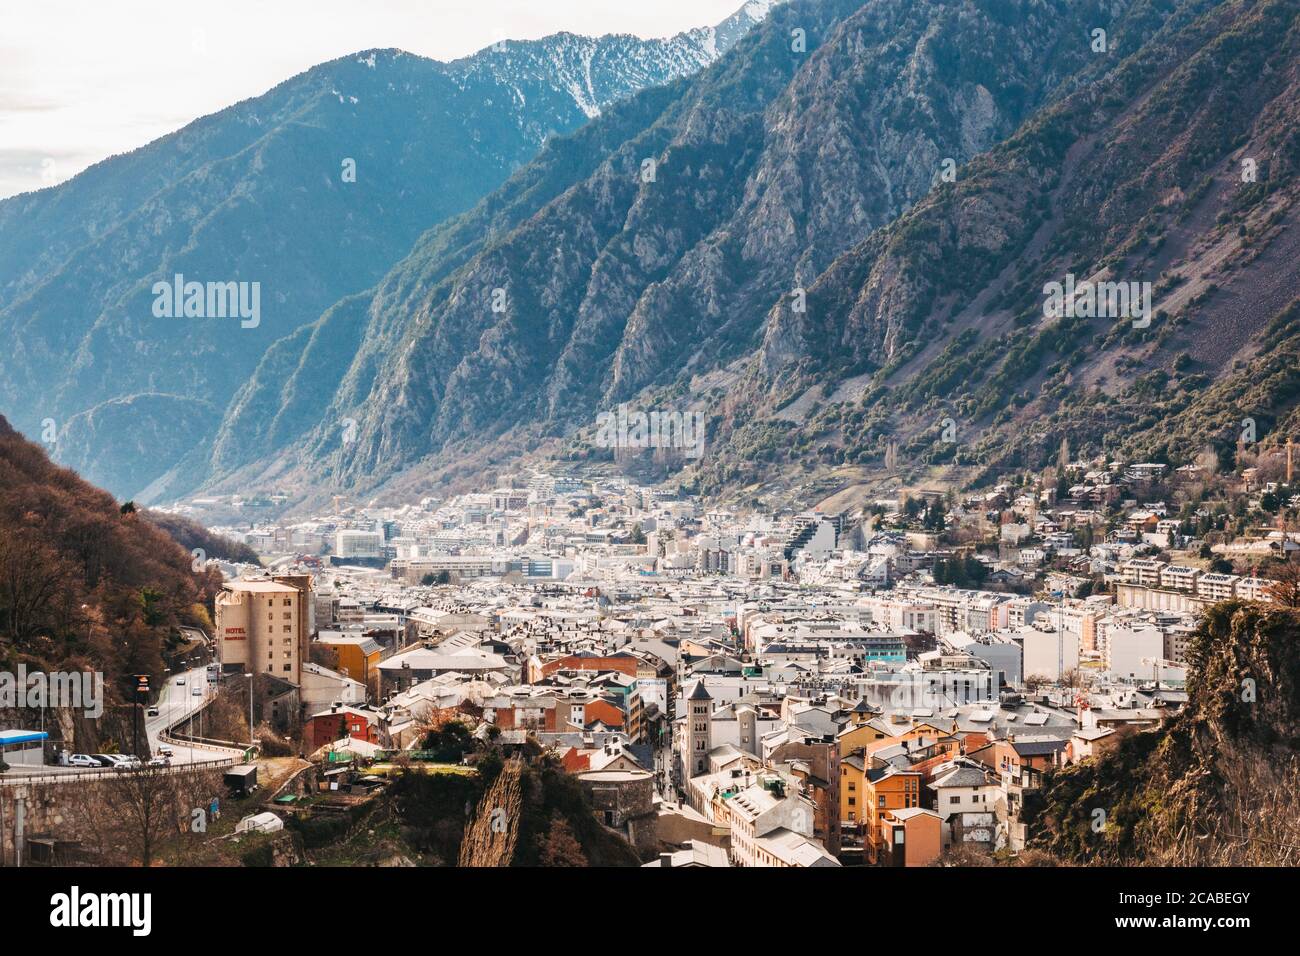 La città di Andorra la Vella, capitale di Andorra, situata nella valle della Gran Valira, nella parte meridionale dei Pirenei Foto Stock